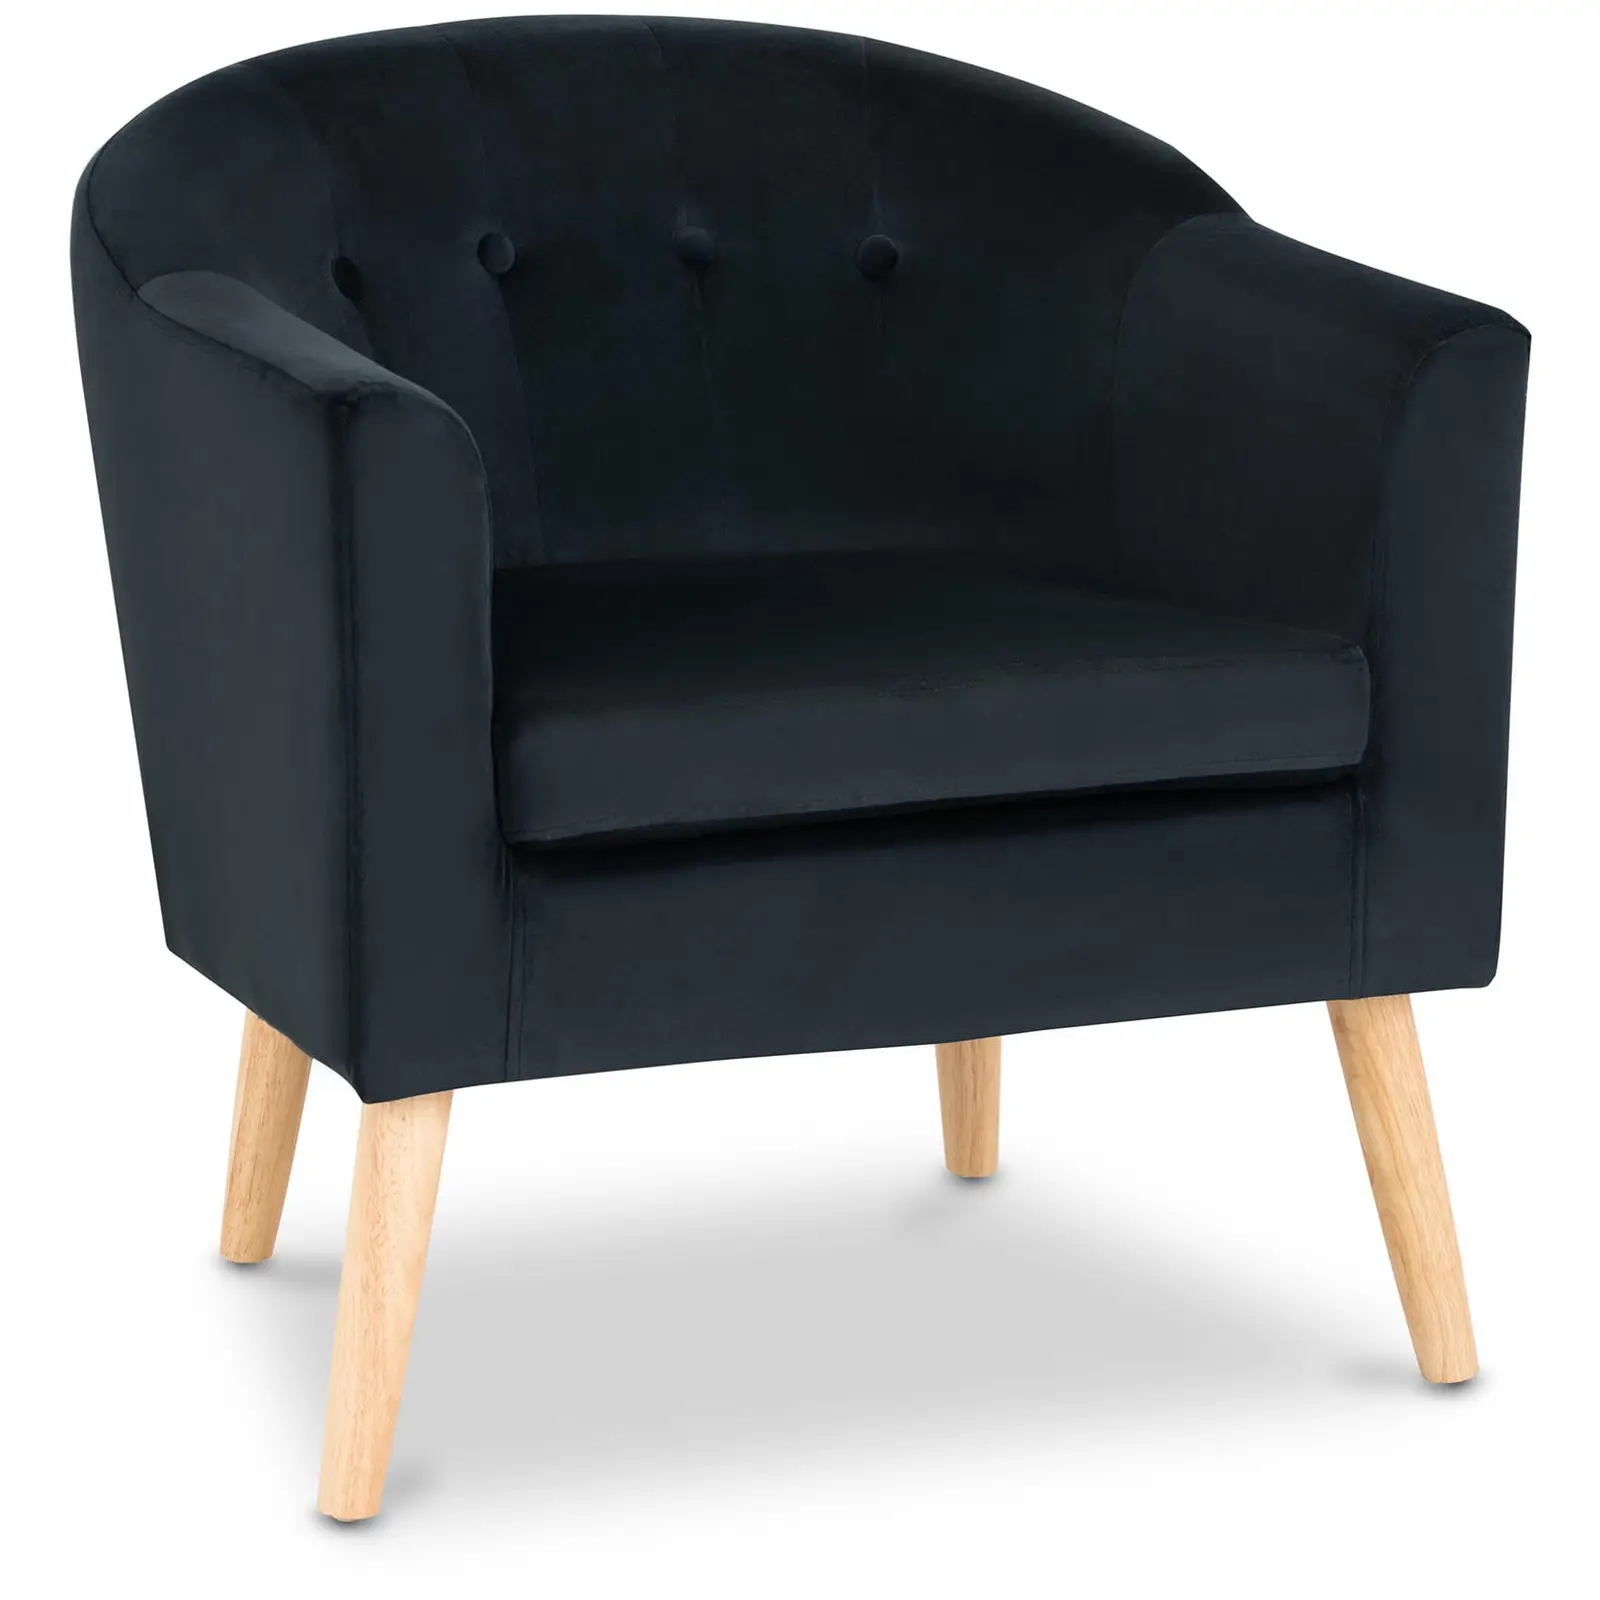 Čalouněná židle - do 180 kg - sedací plocha 49 x 53 cm - černá